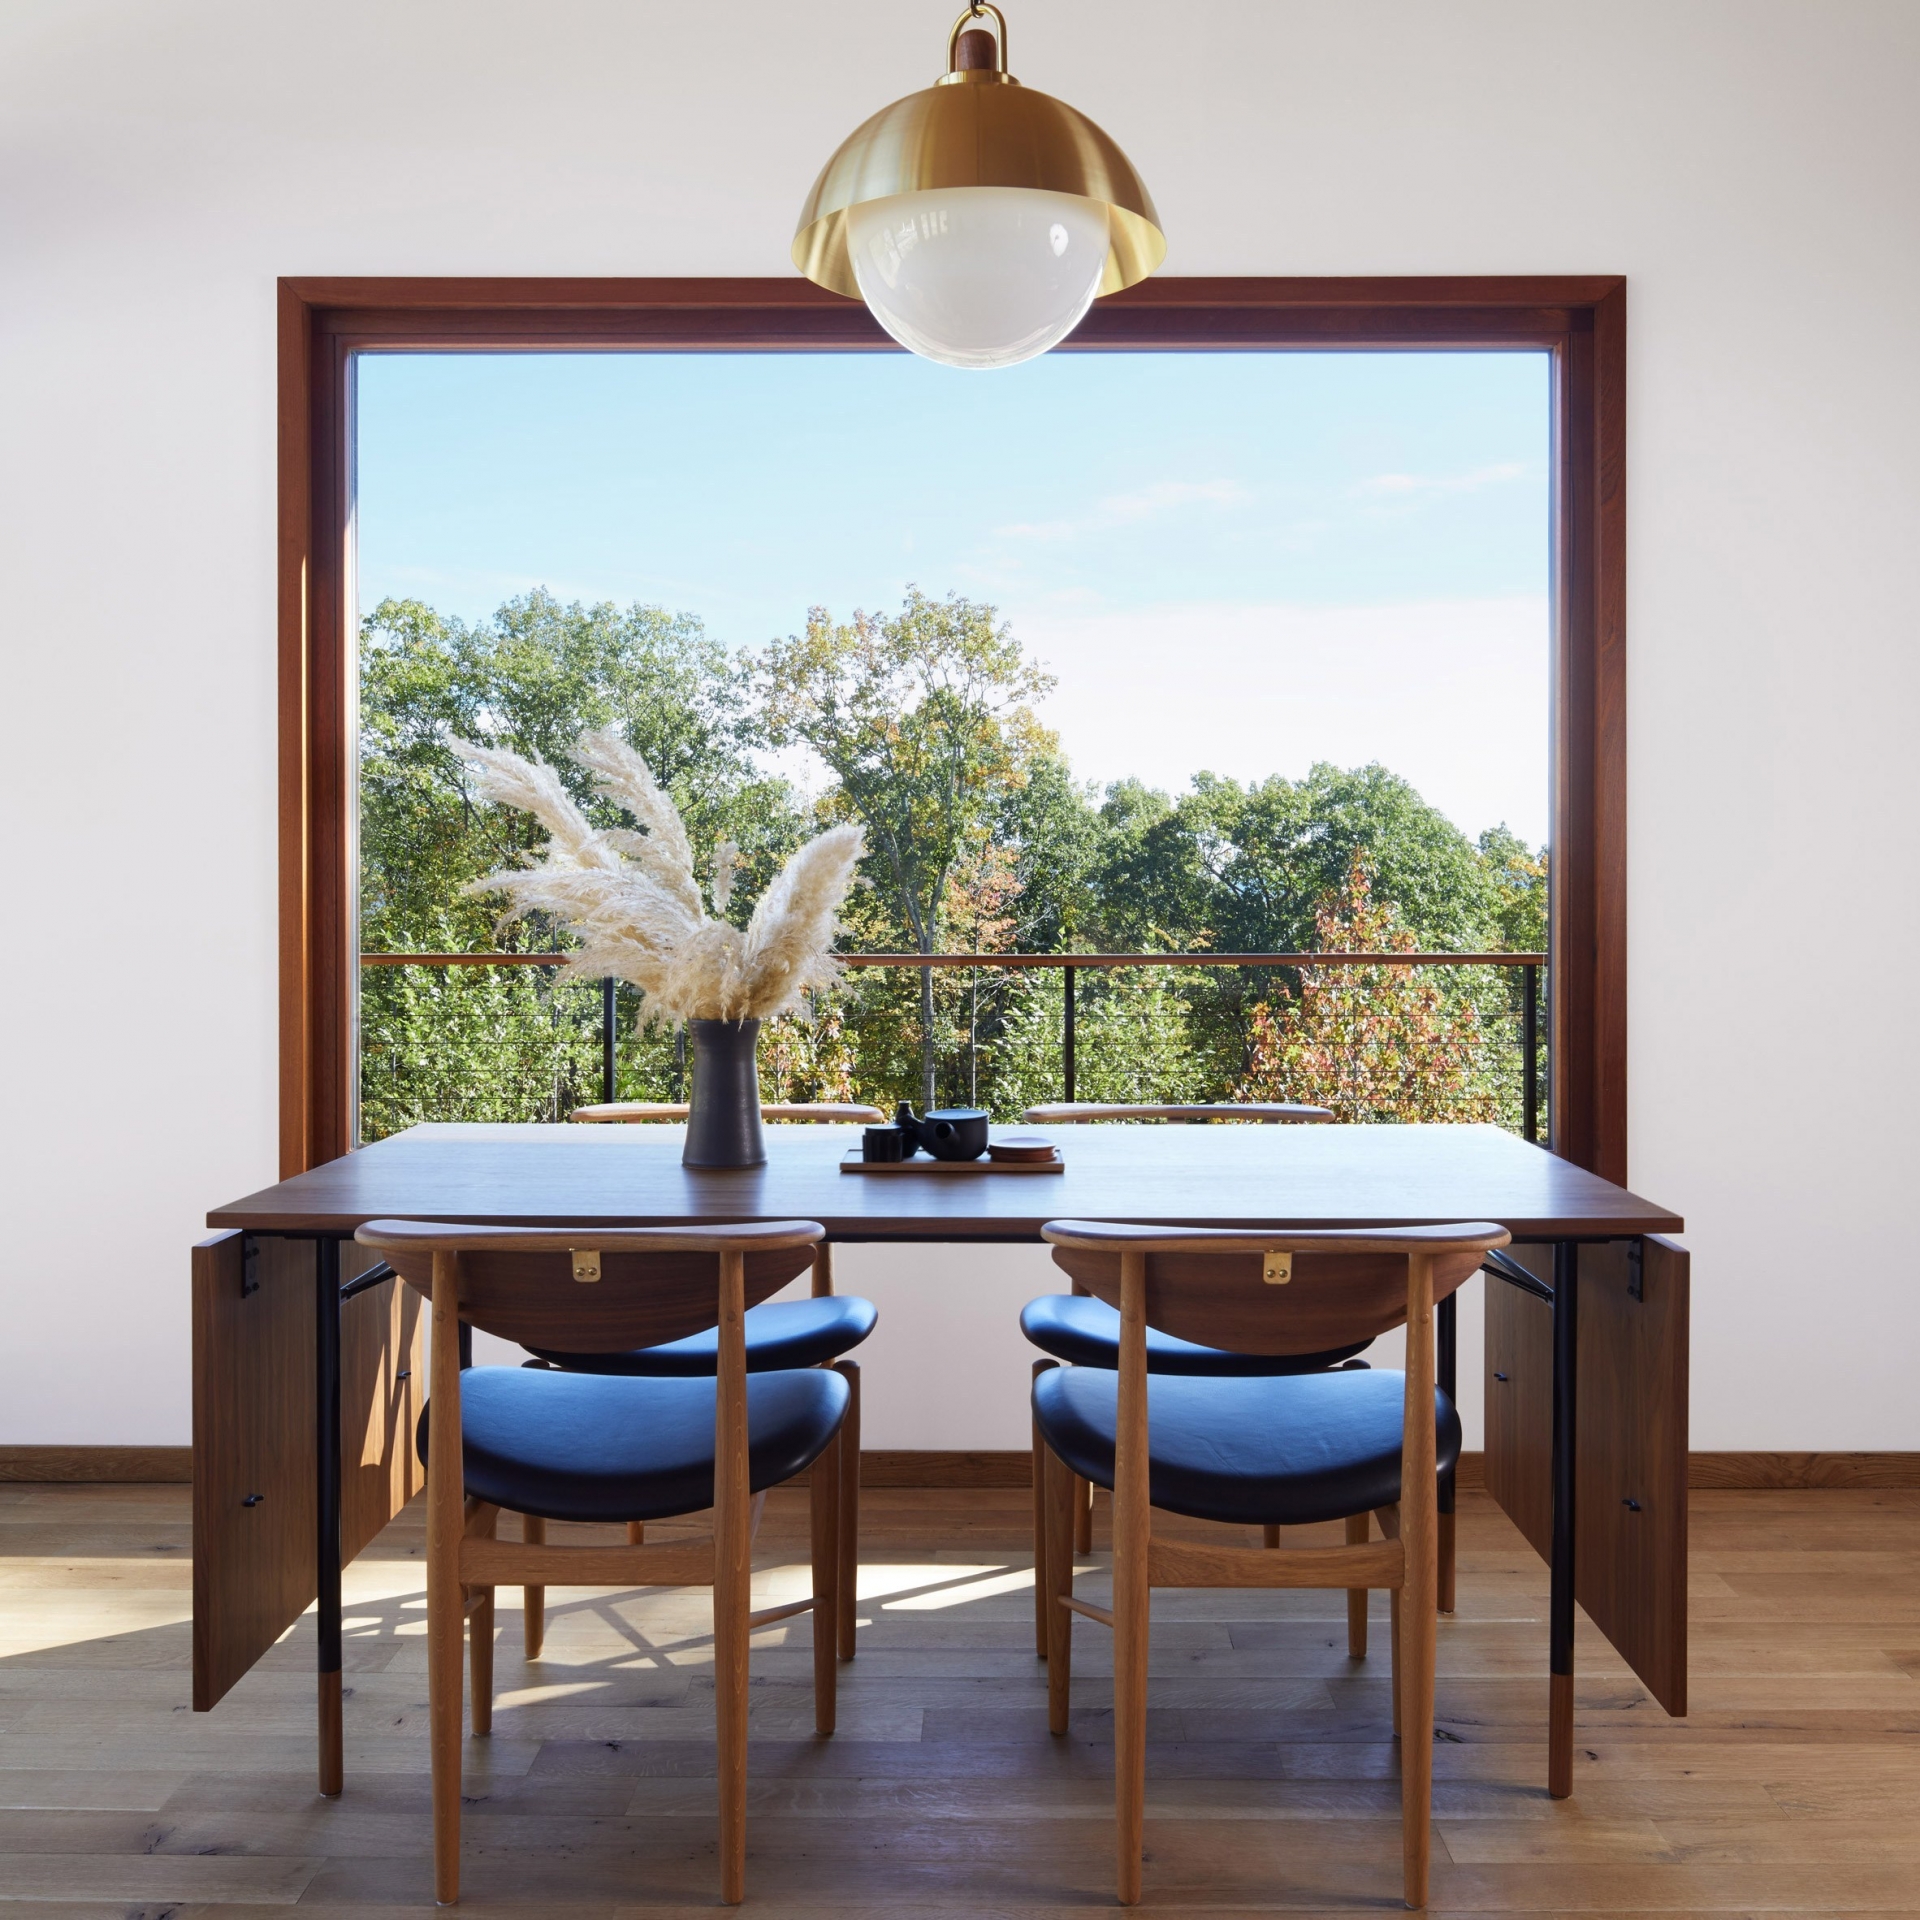 Phòng ăn của ngôi nhà tại New York thiết kế đơn giản với chiếc bàn ăn có thể gấp gọn - một trong số những món nội thất được nhập khẩu từ Đan Mạch. Chiếc bàn có kích thước vừa vặn với khung cửa sổ vuông vắn nhìn ra khung cảnh bên ngoài.